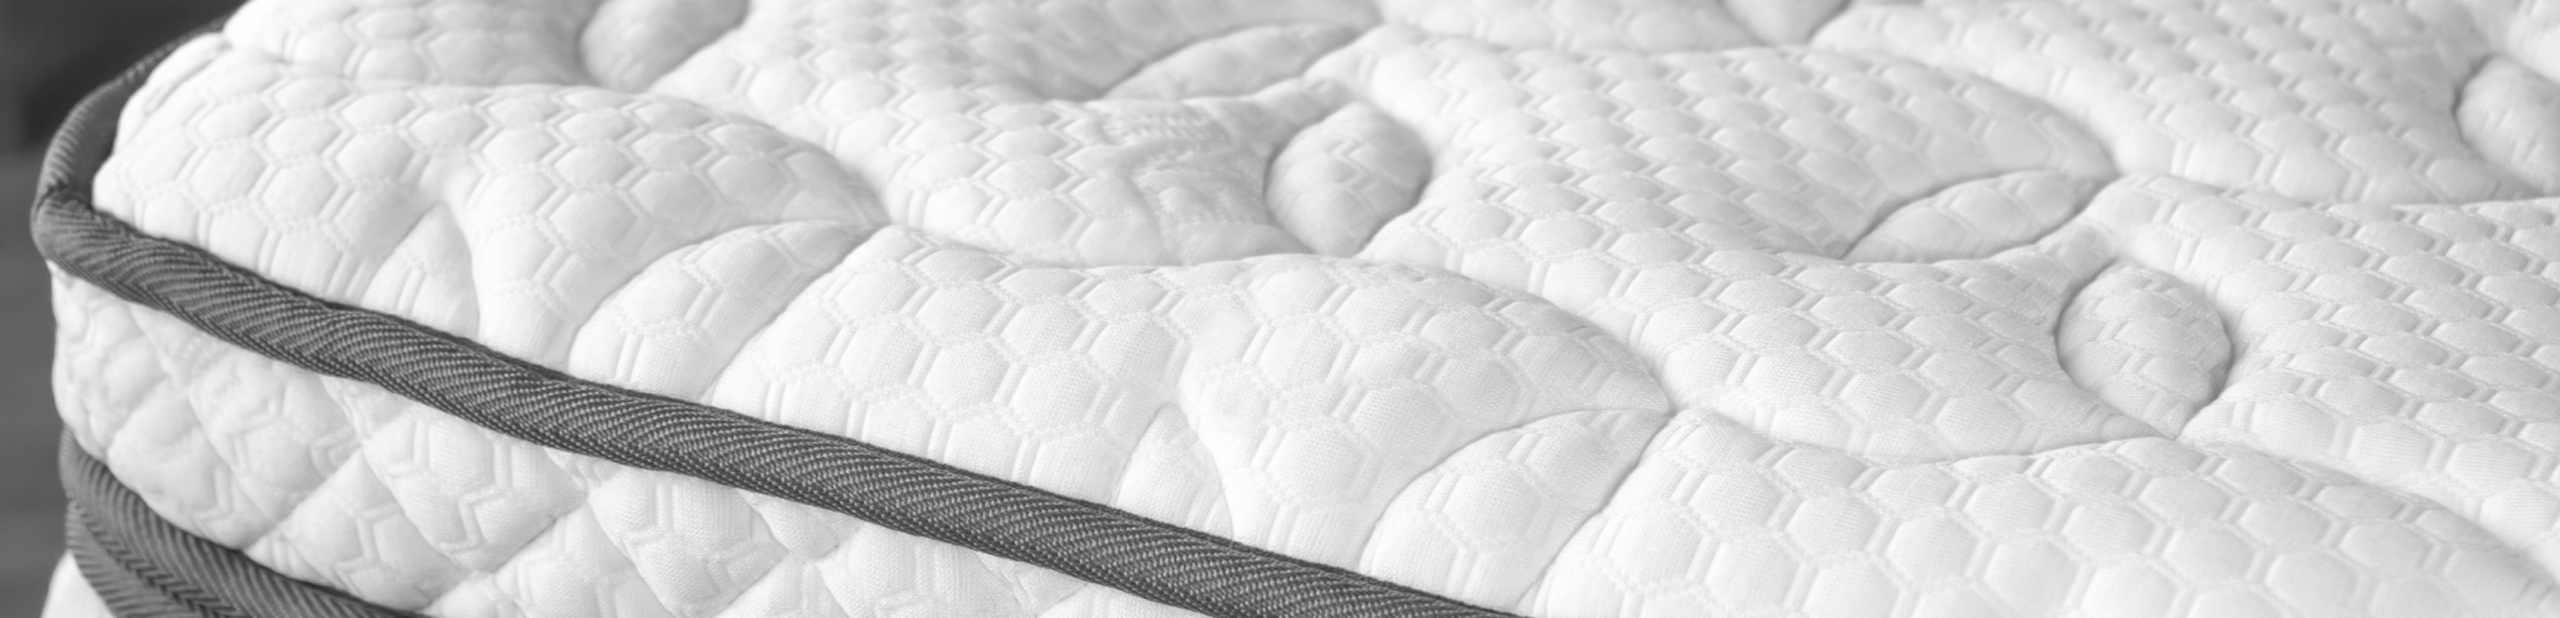 Close up of mattress